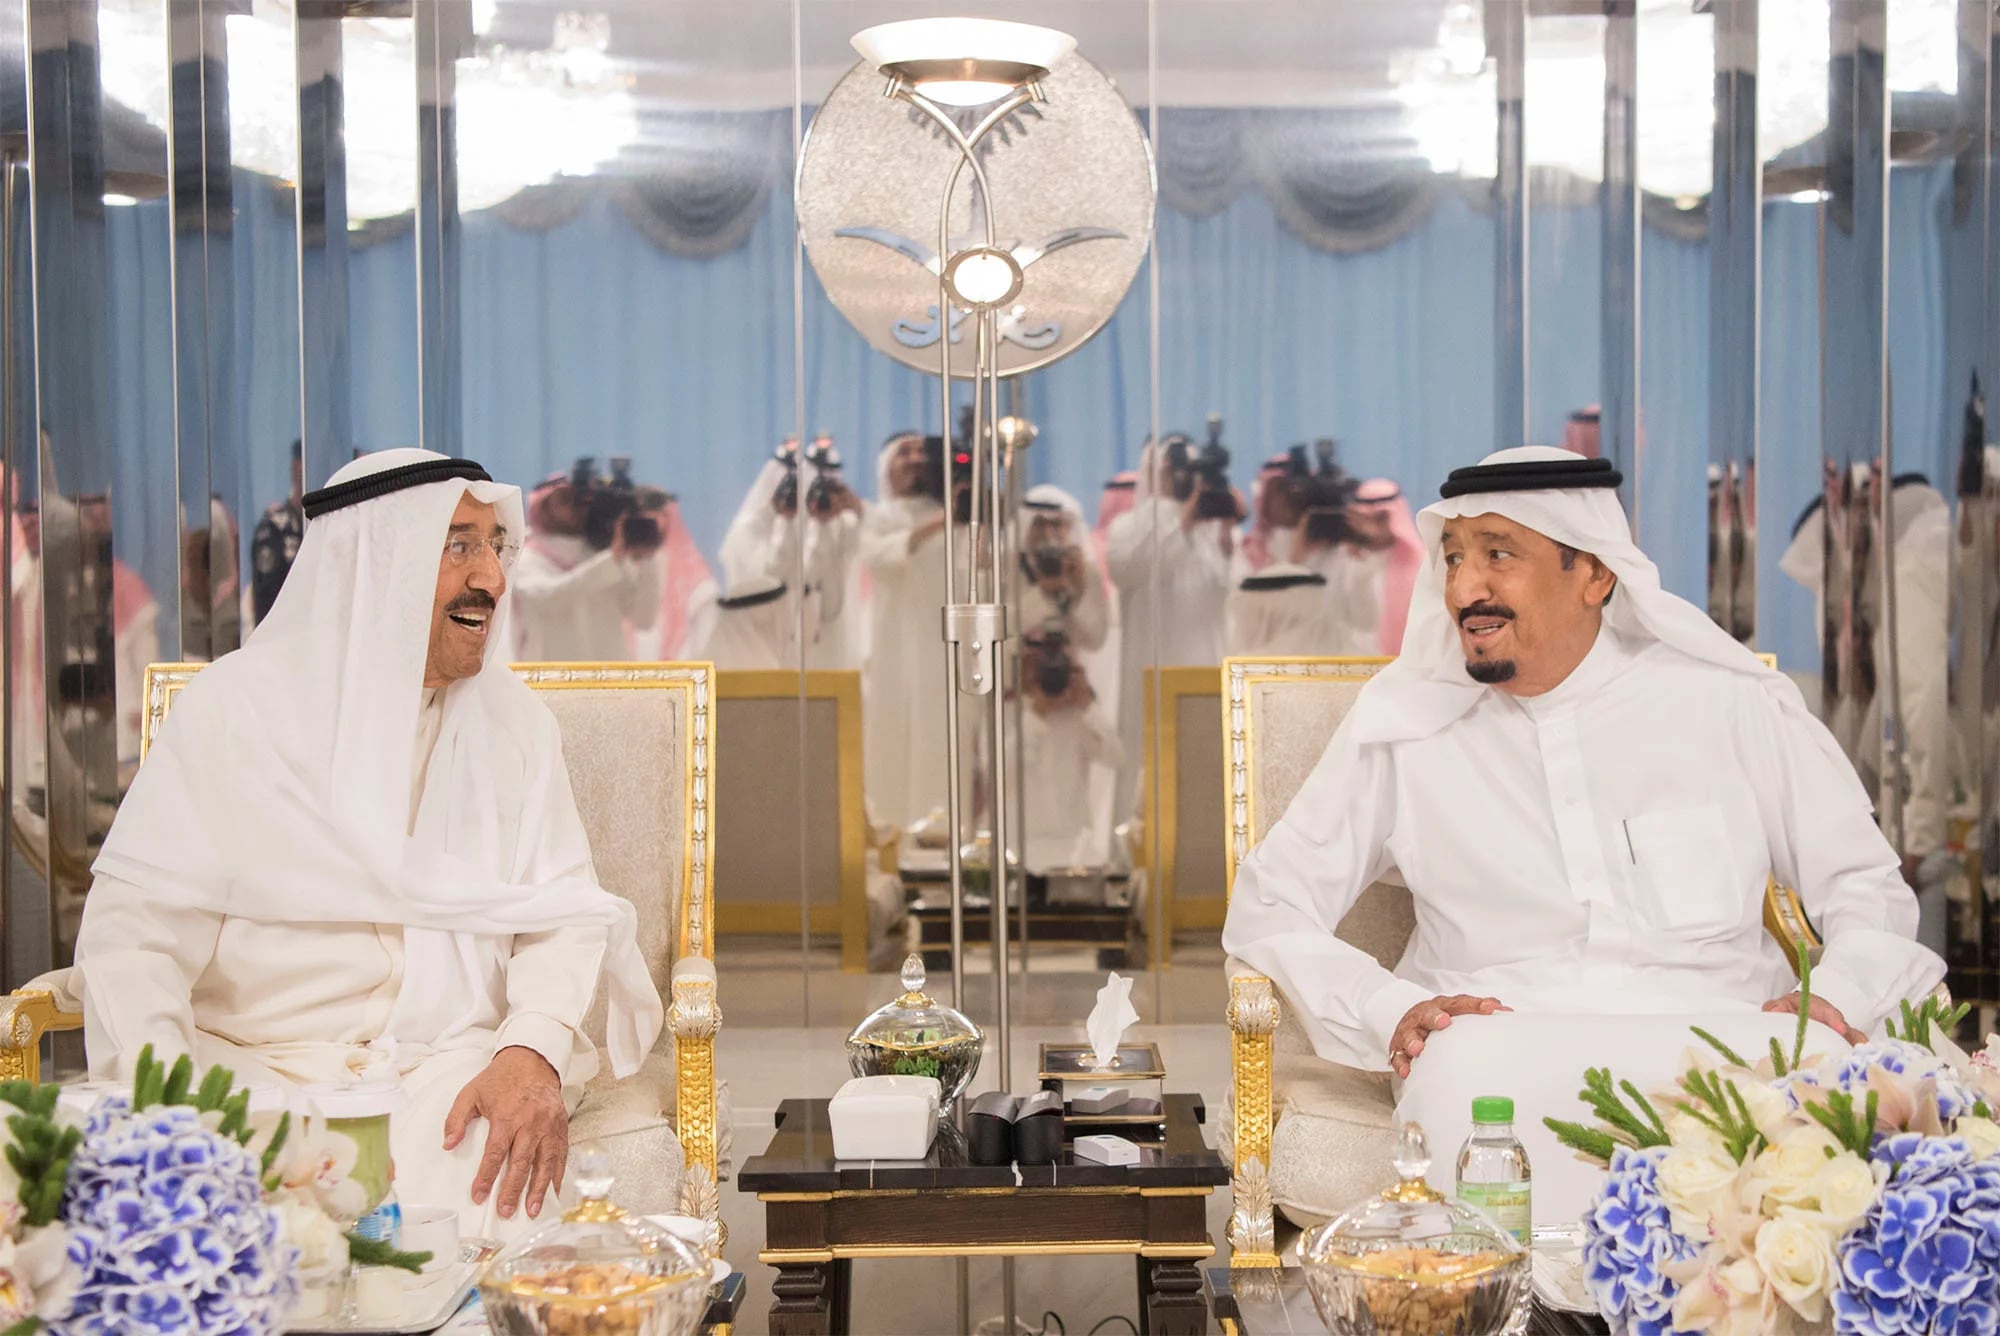 El emir de Kuwait junto al rey de Arabia Saudita durante la mediación en el conflicto (Reuters)